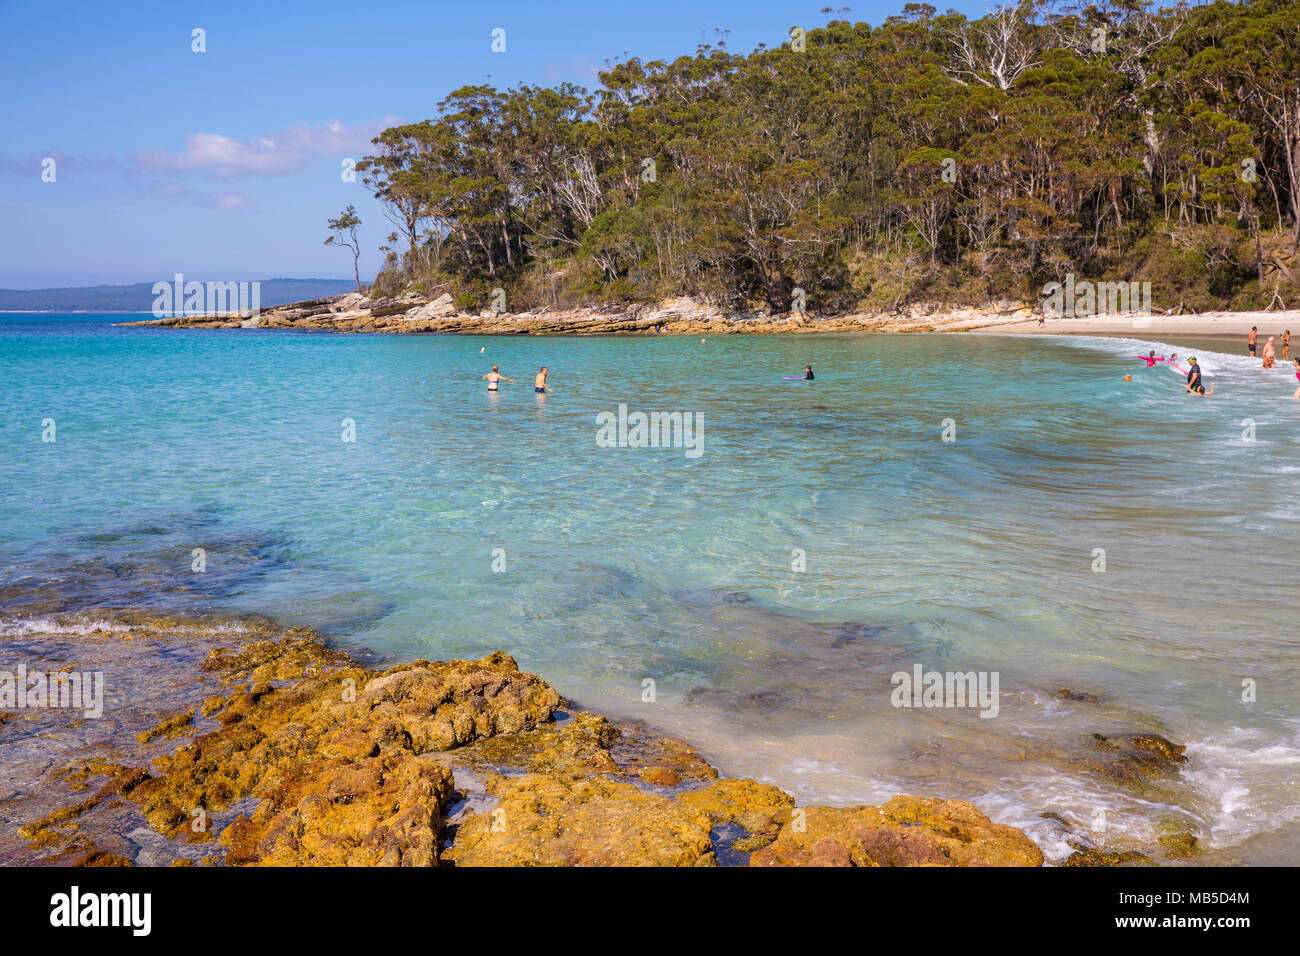 Plage de Blenheim à Jervis bay, plage populaire pour la plongée et la natation,Nouvelle Galles du Sud, Australie Banque D'Images